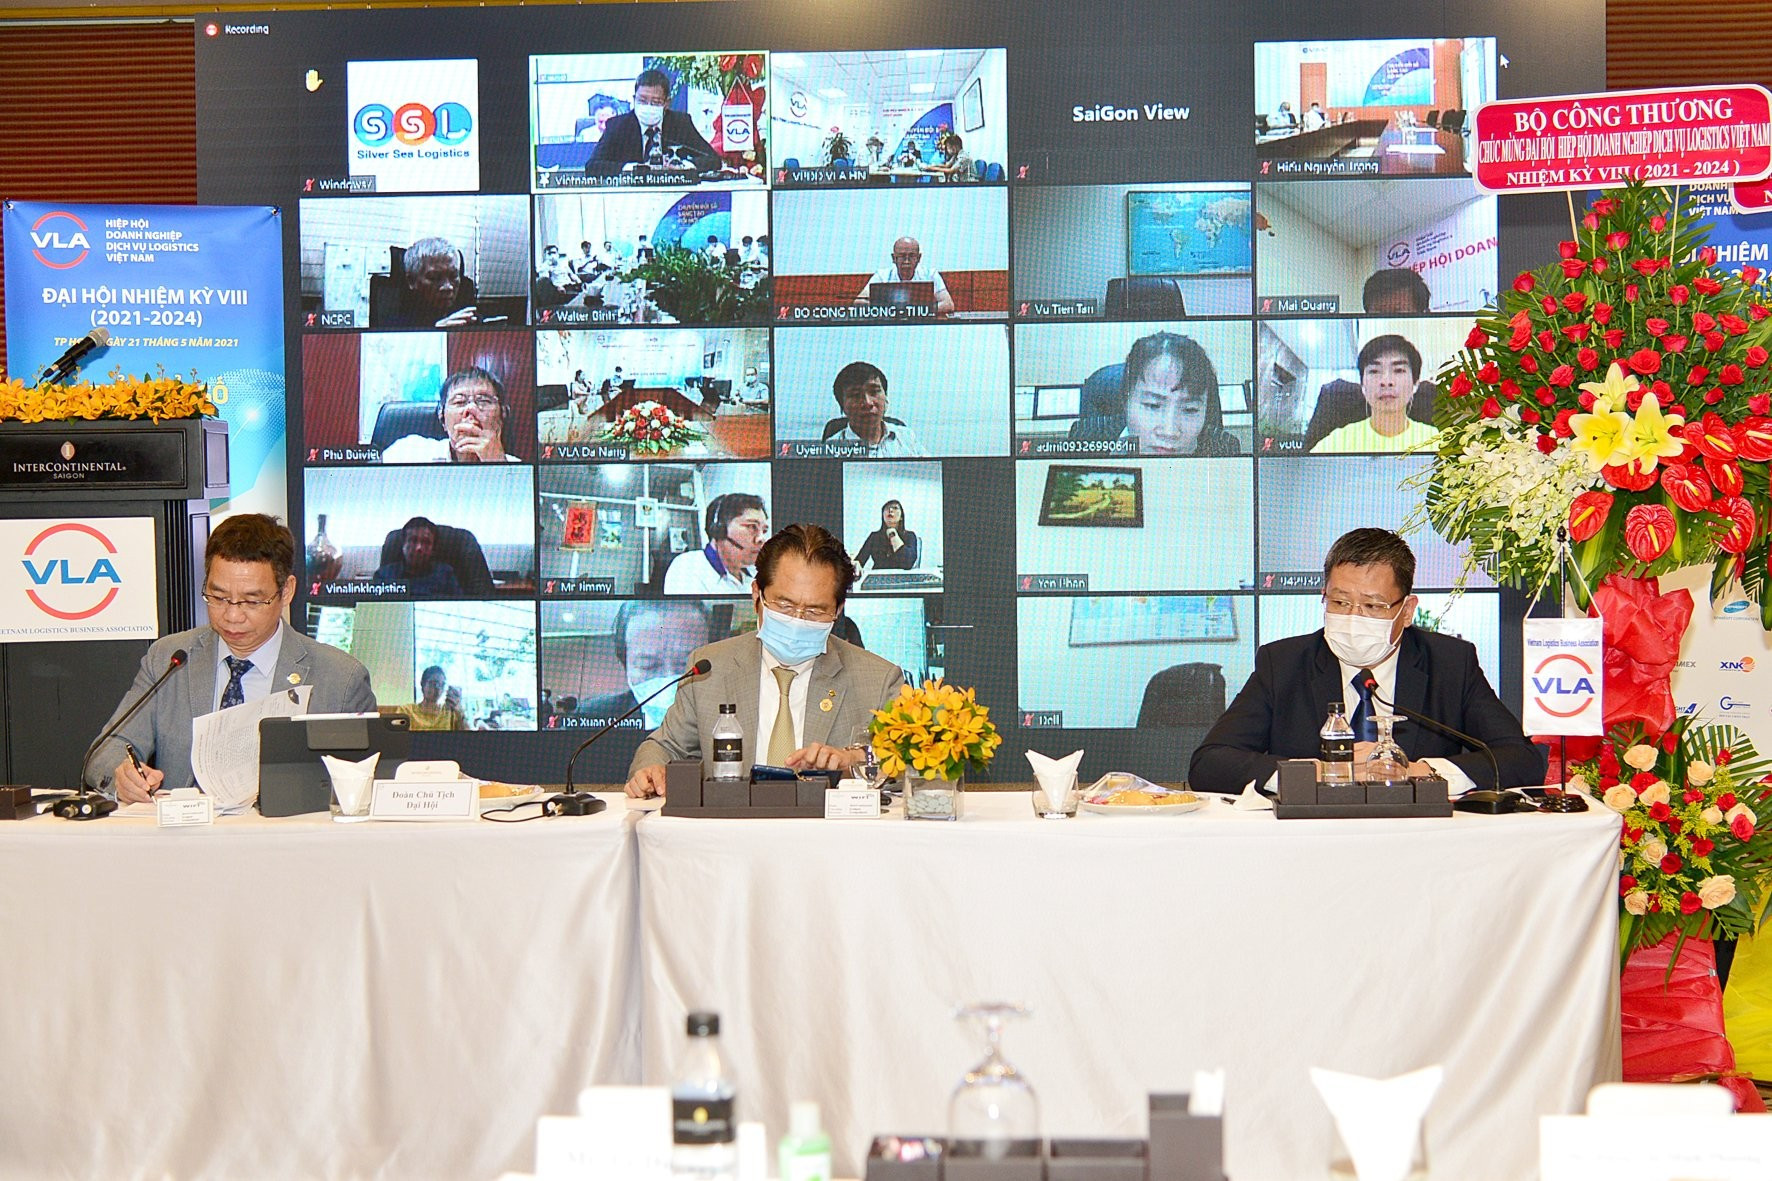 Đại hội Nhiệm kỳ VIII VLA được tổ chức theo hình thức trực tuyến (Ảnh: Phó Bá Cường)